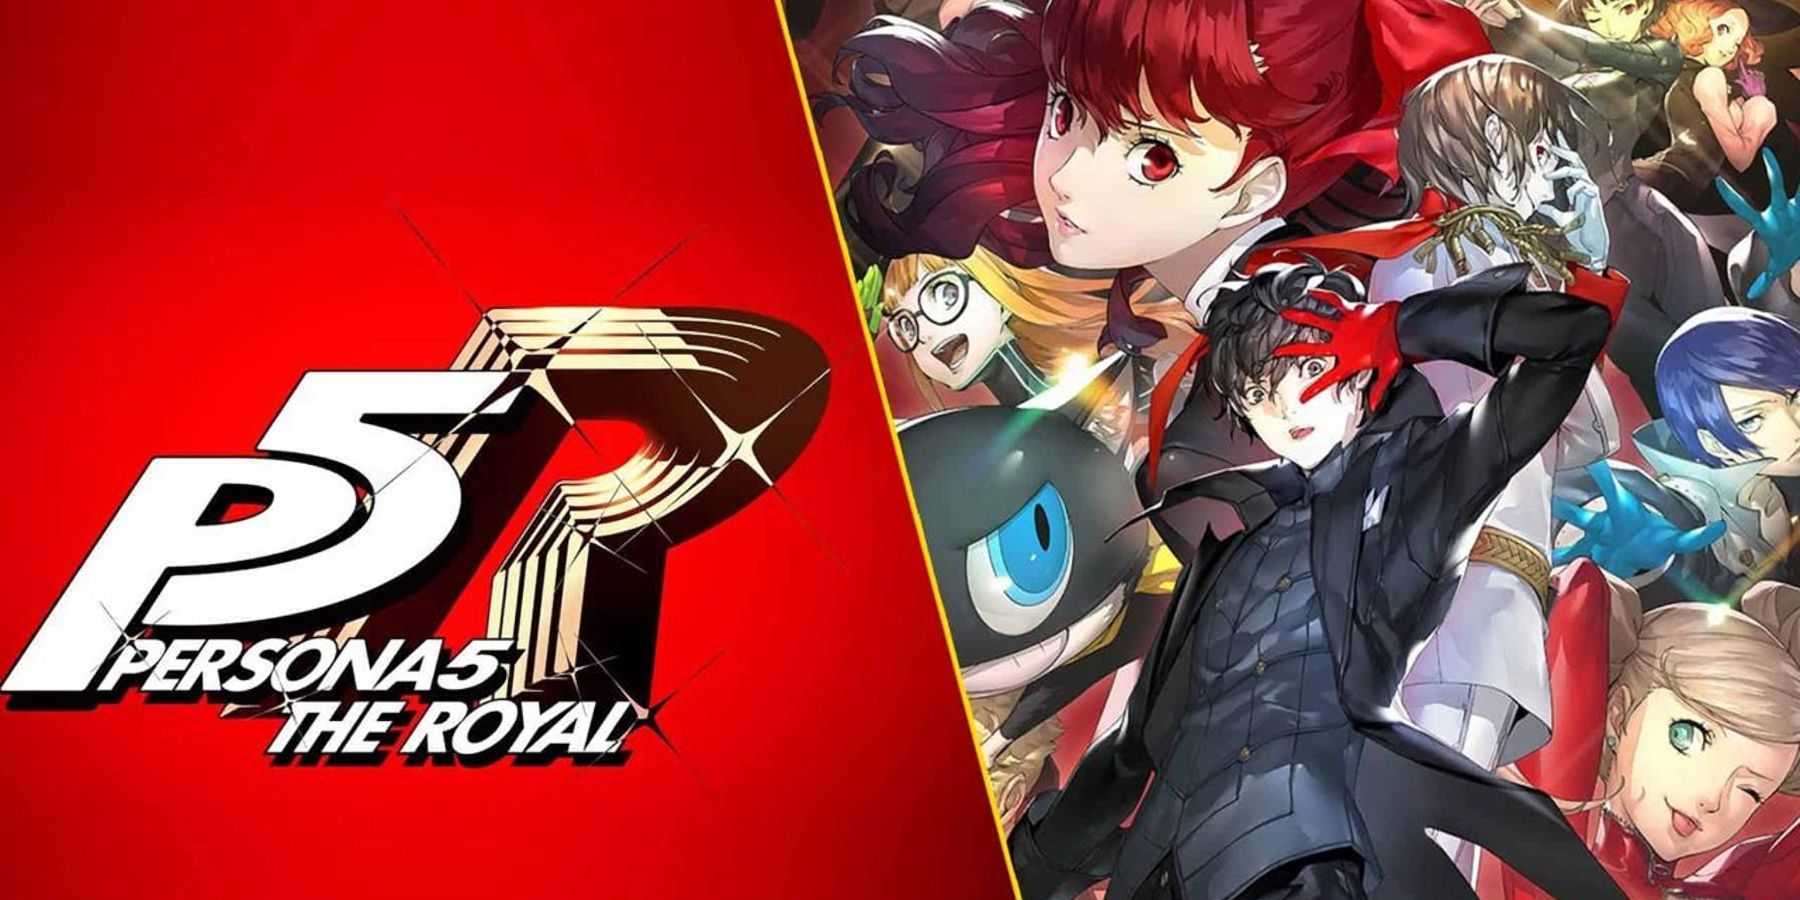 Rygter: Persona 5 Royal muligvis lækket til Nintendo Switch